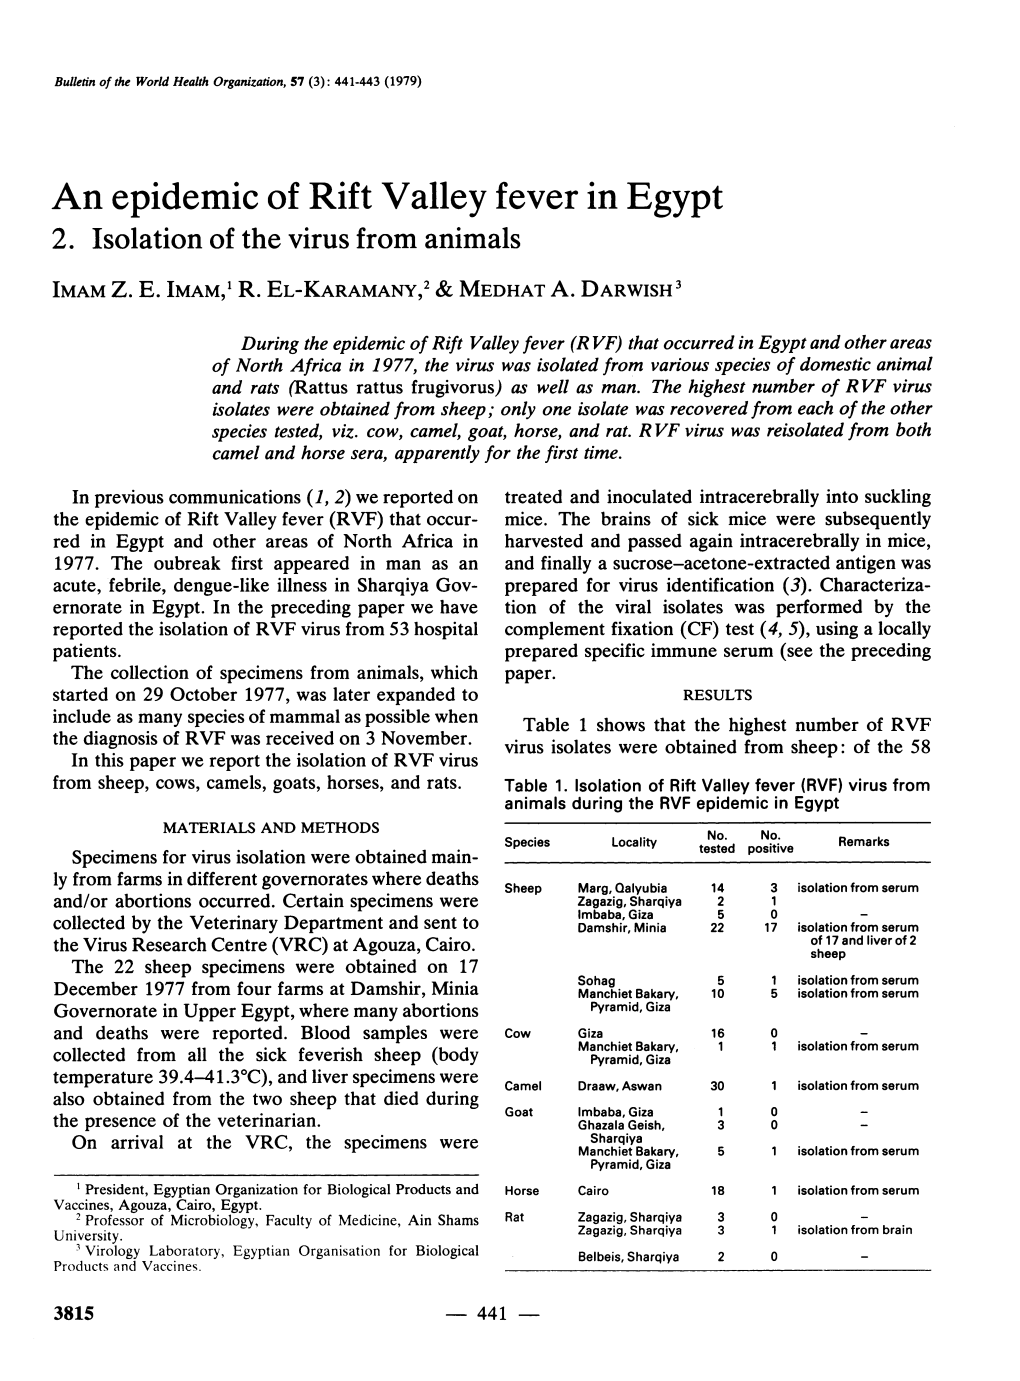 An Epidemic of Rift Valley Fever in Egypt 2